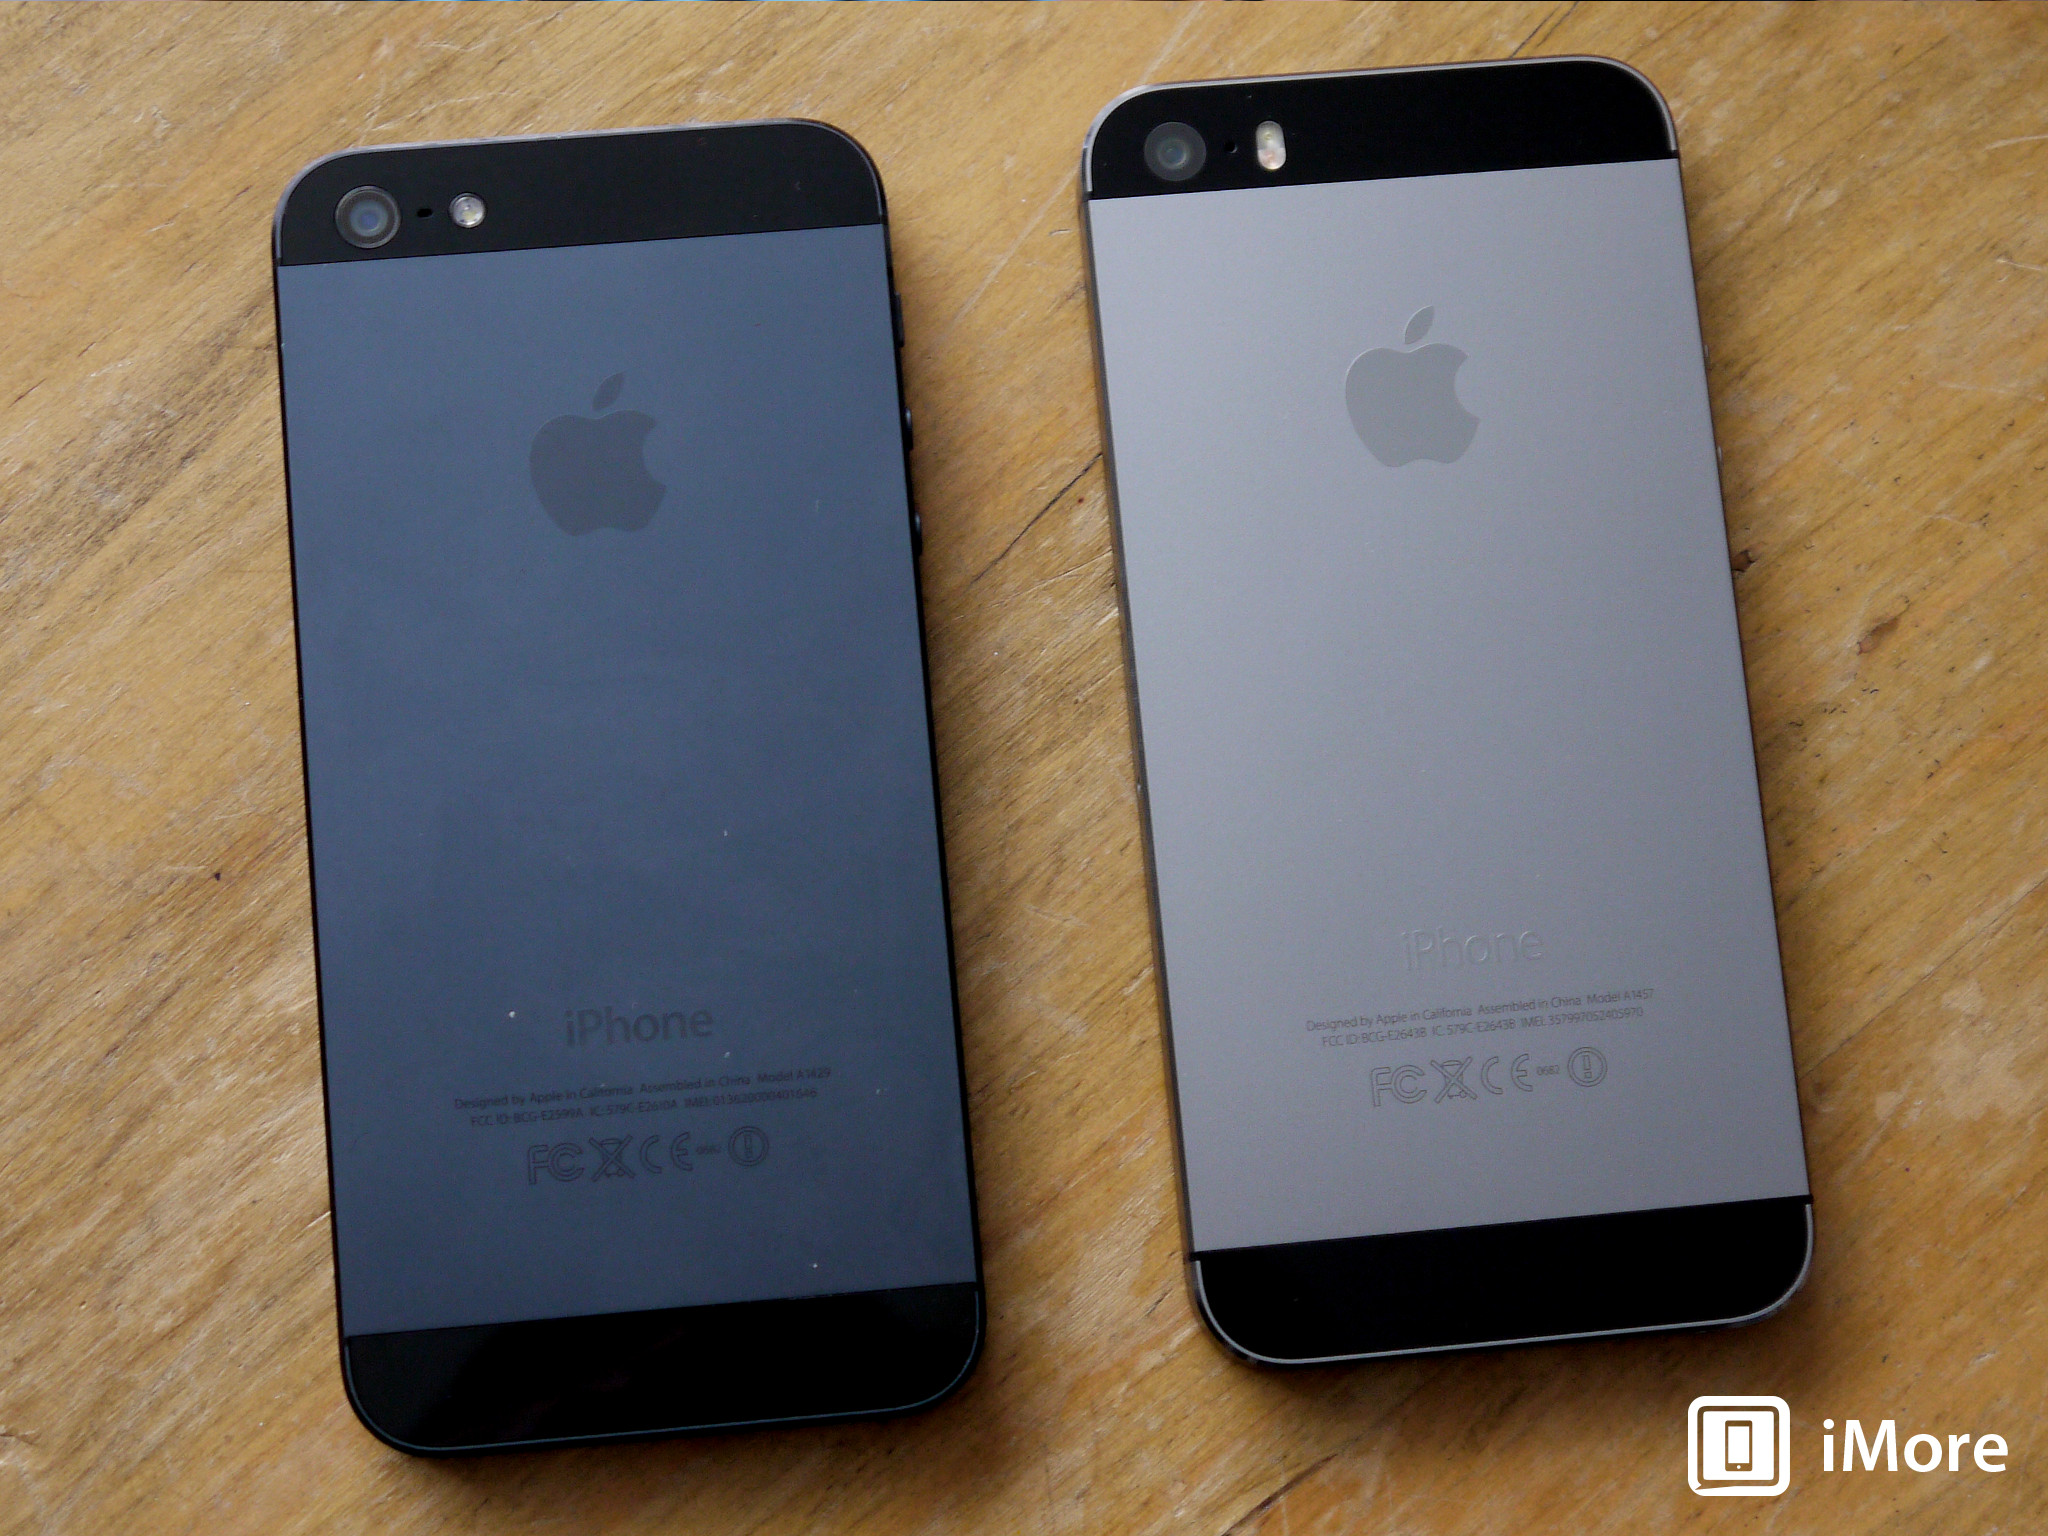 Tegenstander Origineel Het is de bedoeling dat The difference between the Space Gray iPhone 5s and the black iPhone 5 |  iMore